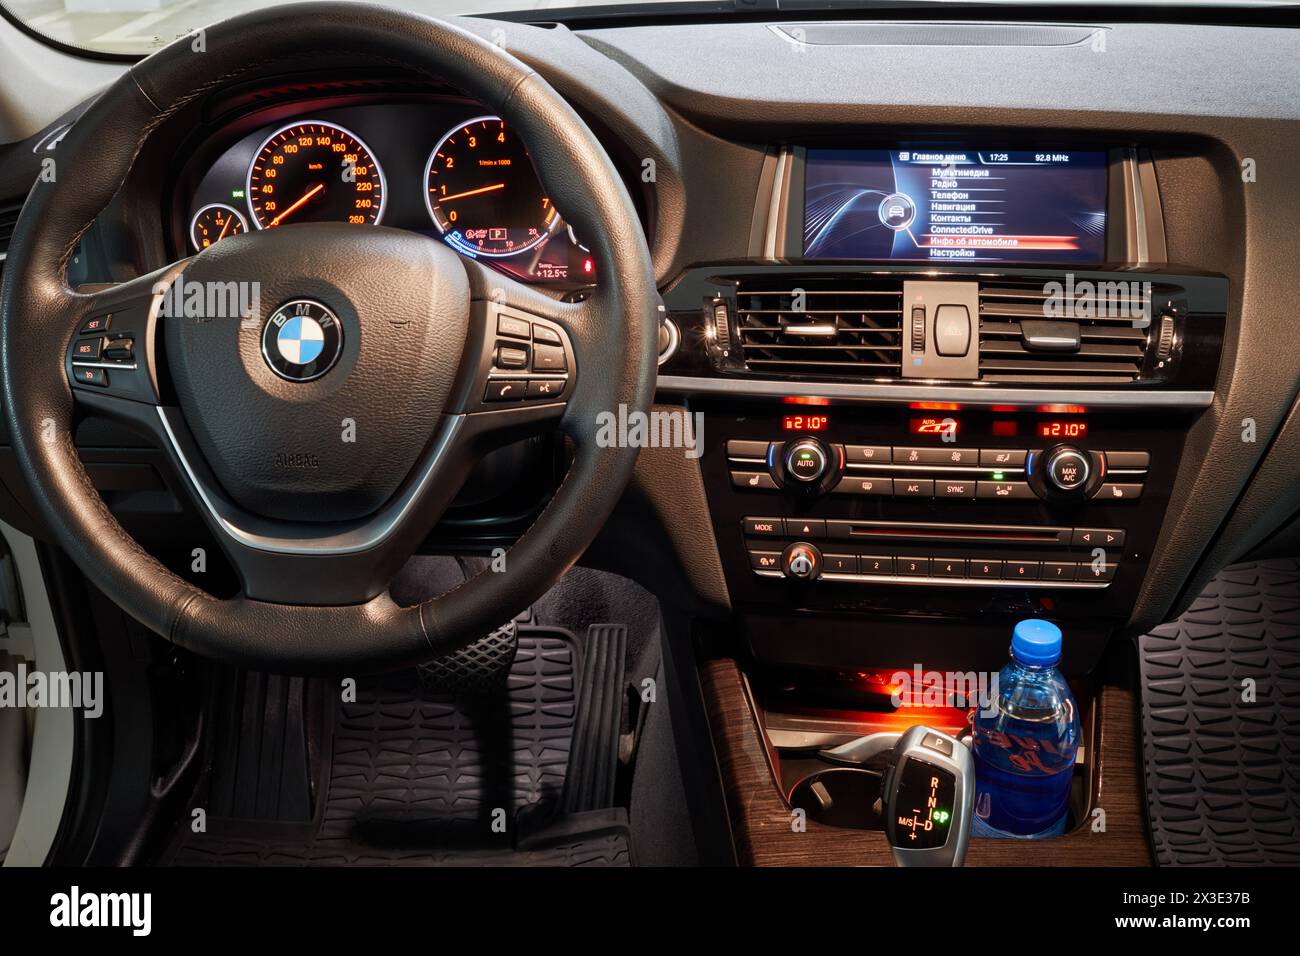 MOSCA, RUSSIA - 17 novembre 2017: Sedile del conducente, volante, cruscotto, menu interfaccia russo dell'auto BMW. Foto Stock